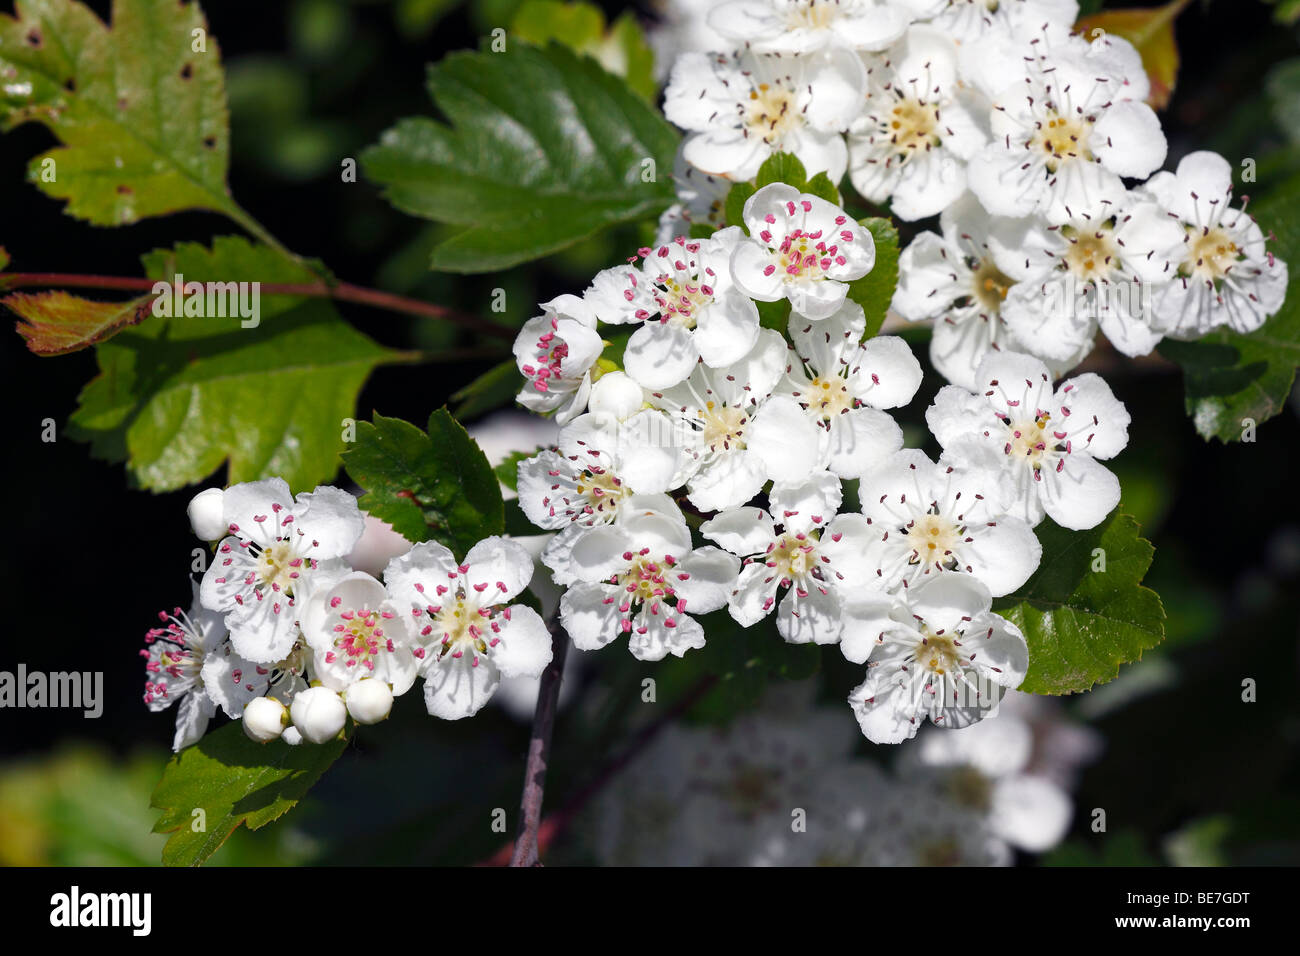 Flowering Midland Hawthorn, Woodland Hawthorn, Mayflower (Crataegus laevigata), medical plant Stock Photo